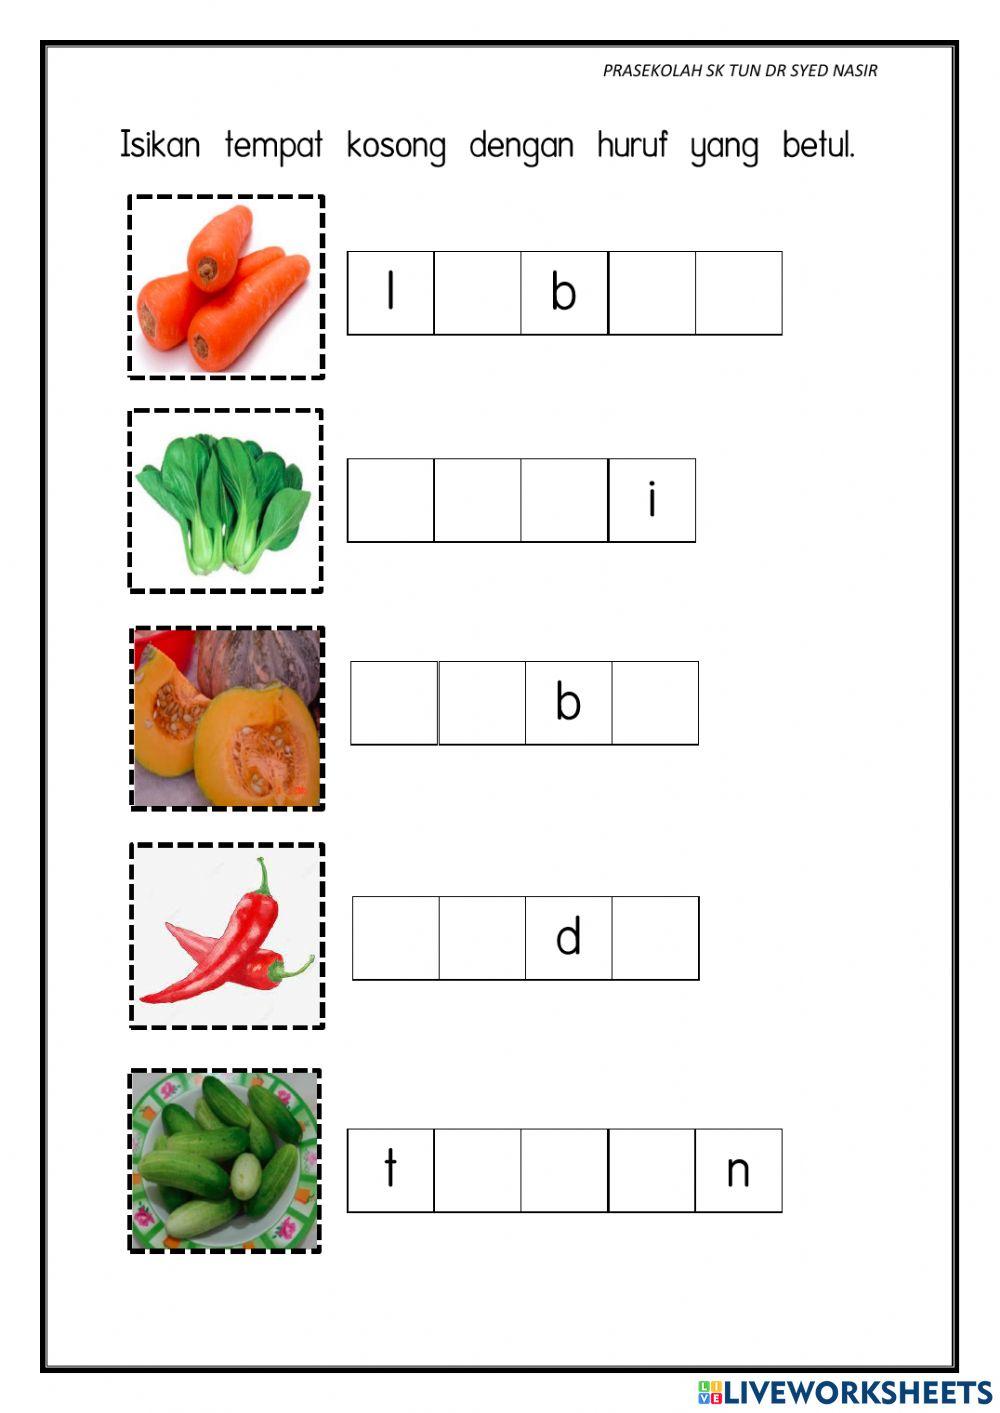 Tema: Sayur-sayuran